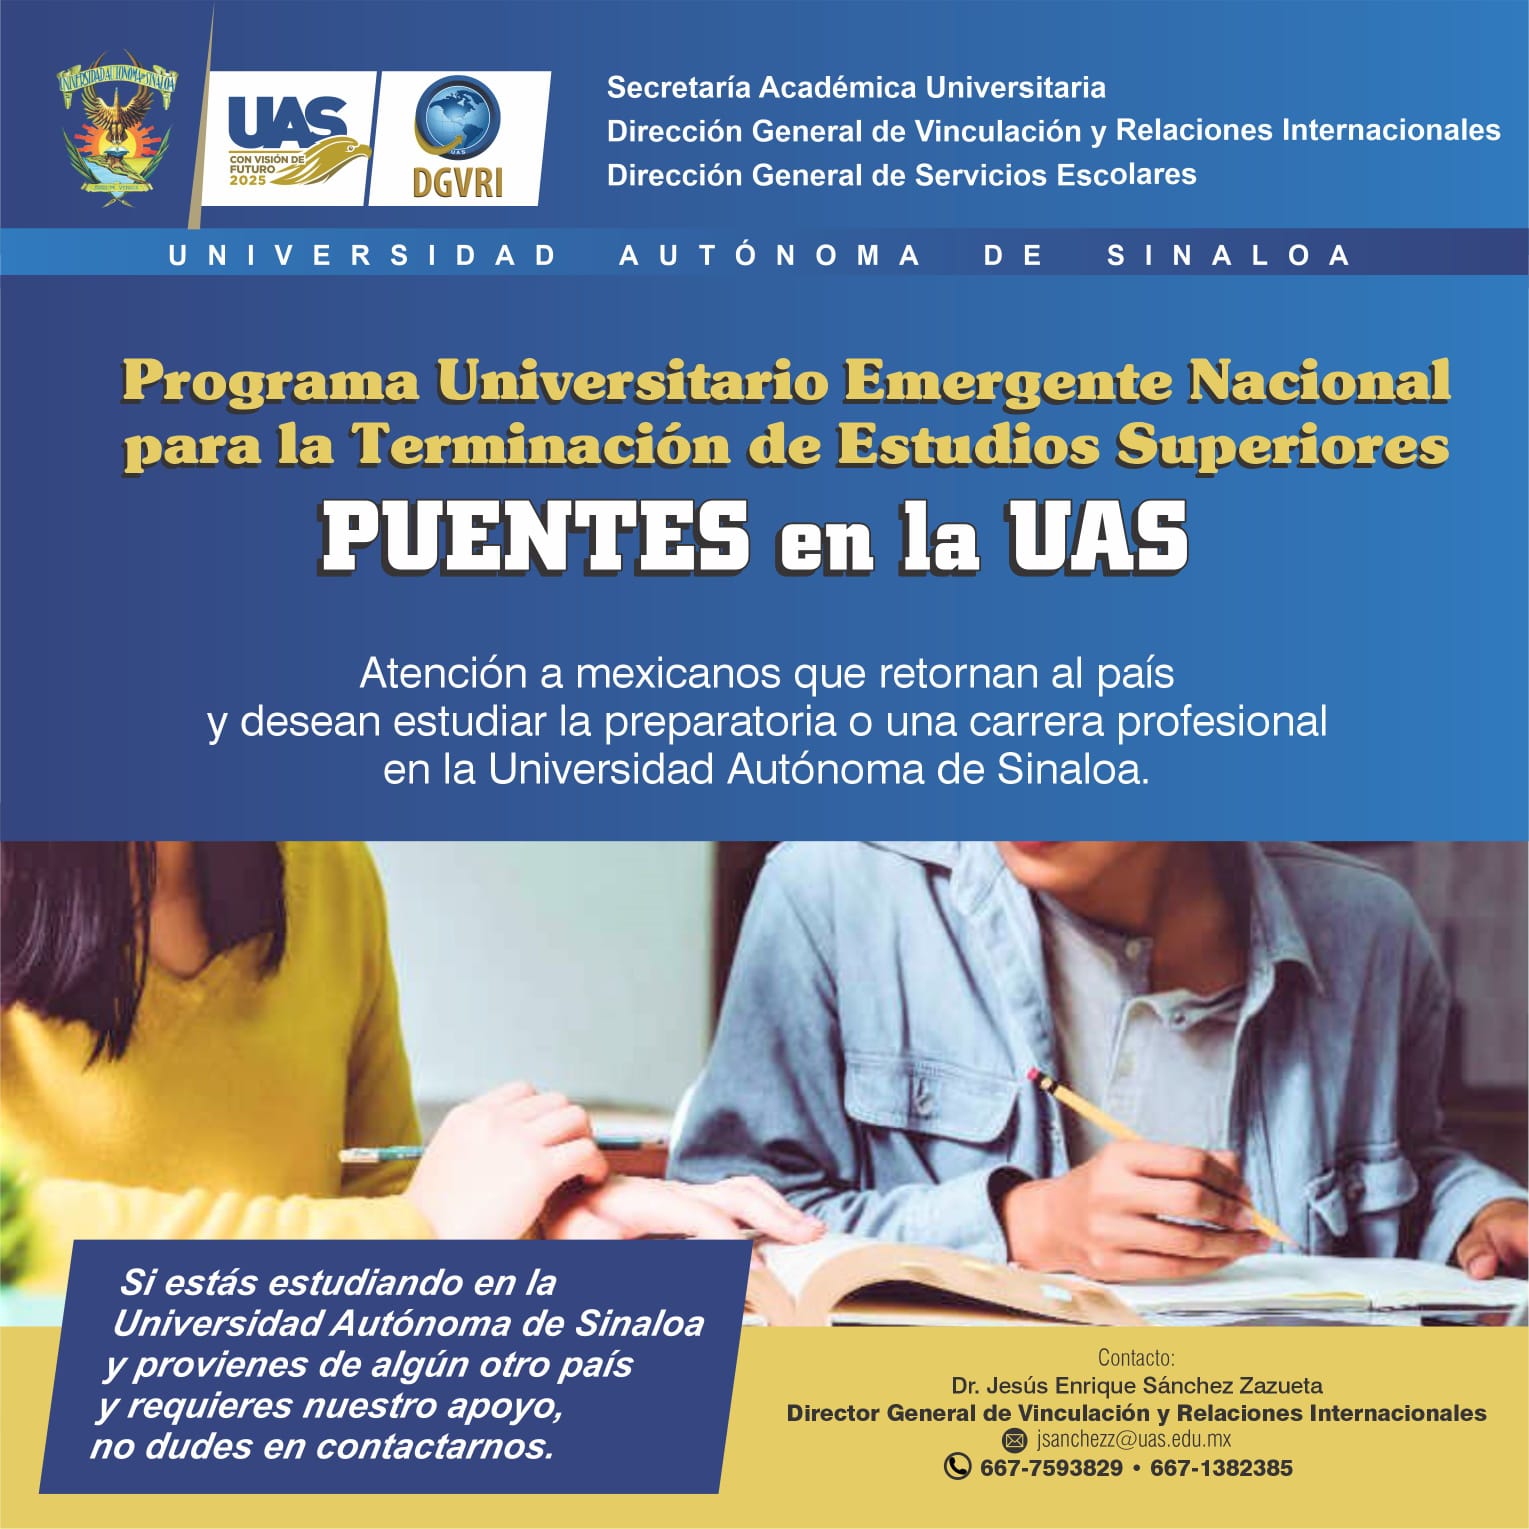 Programa universitario emergente nacional para la terminacin de estudios superiores PUENTES en la UAS